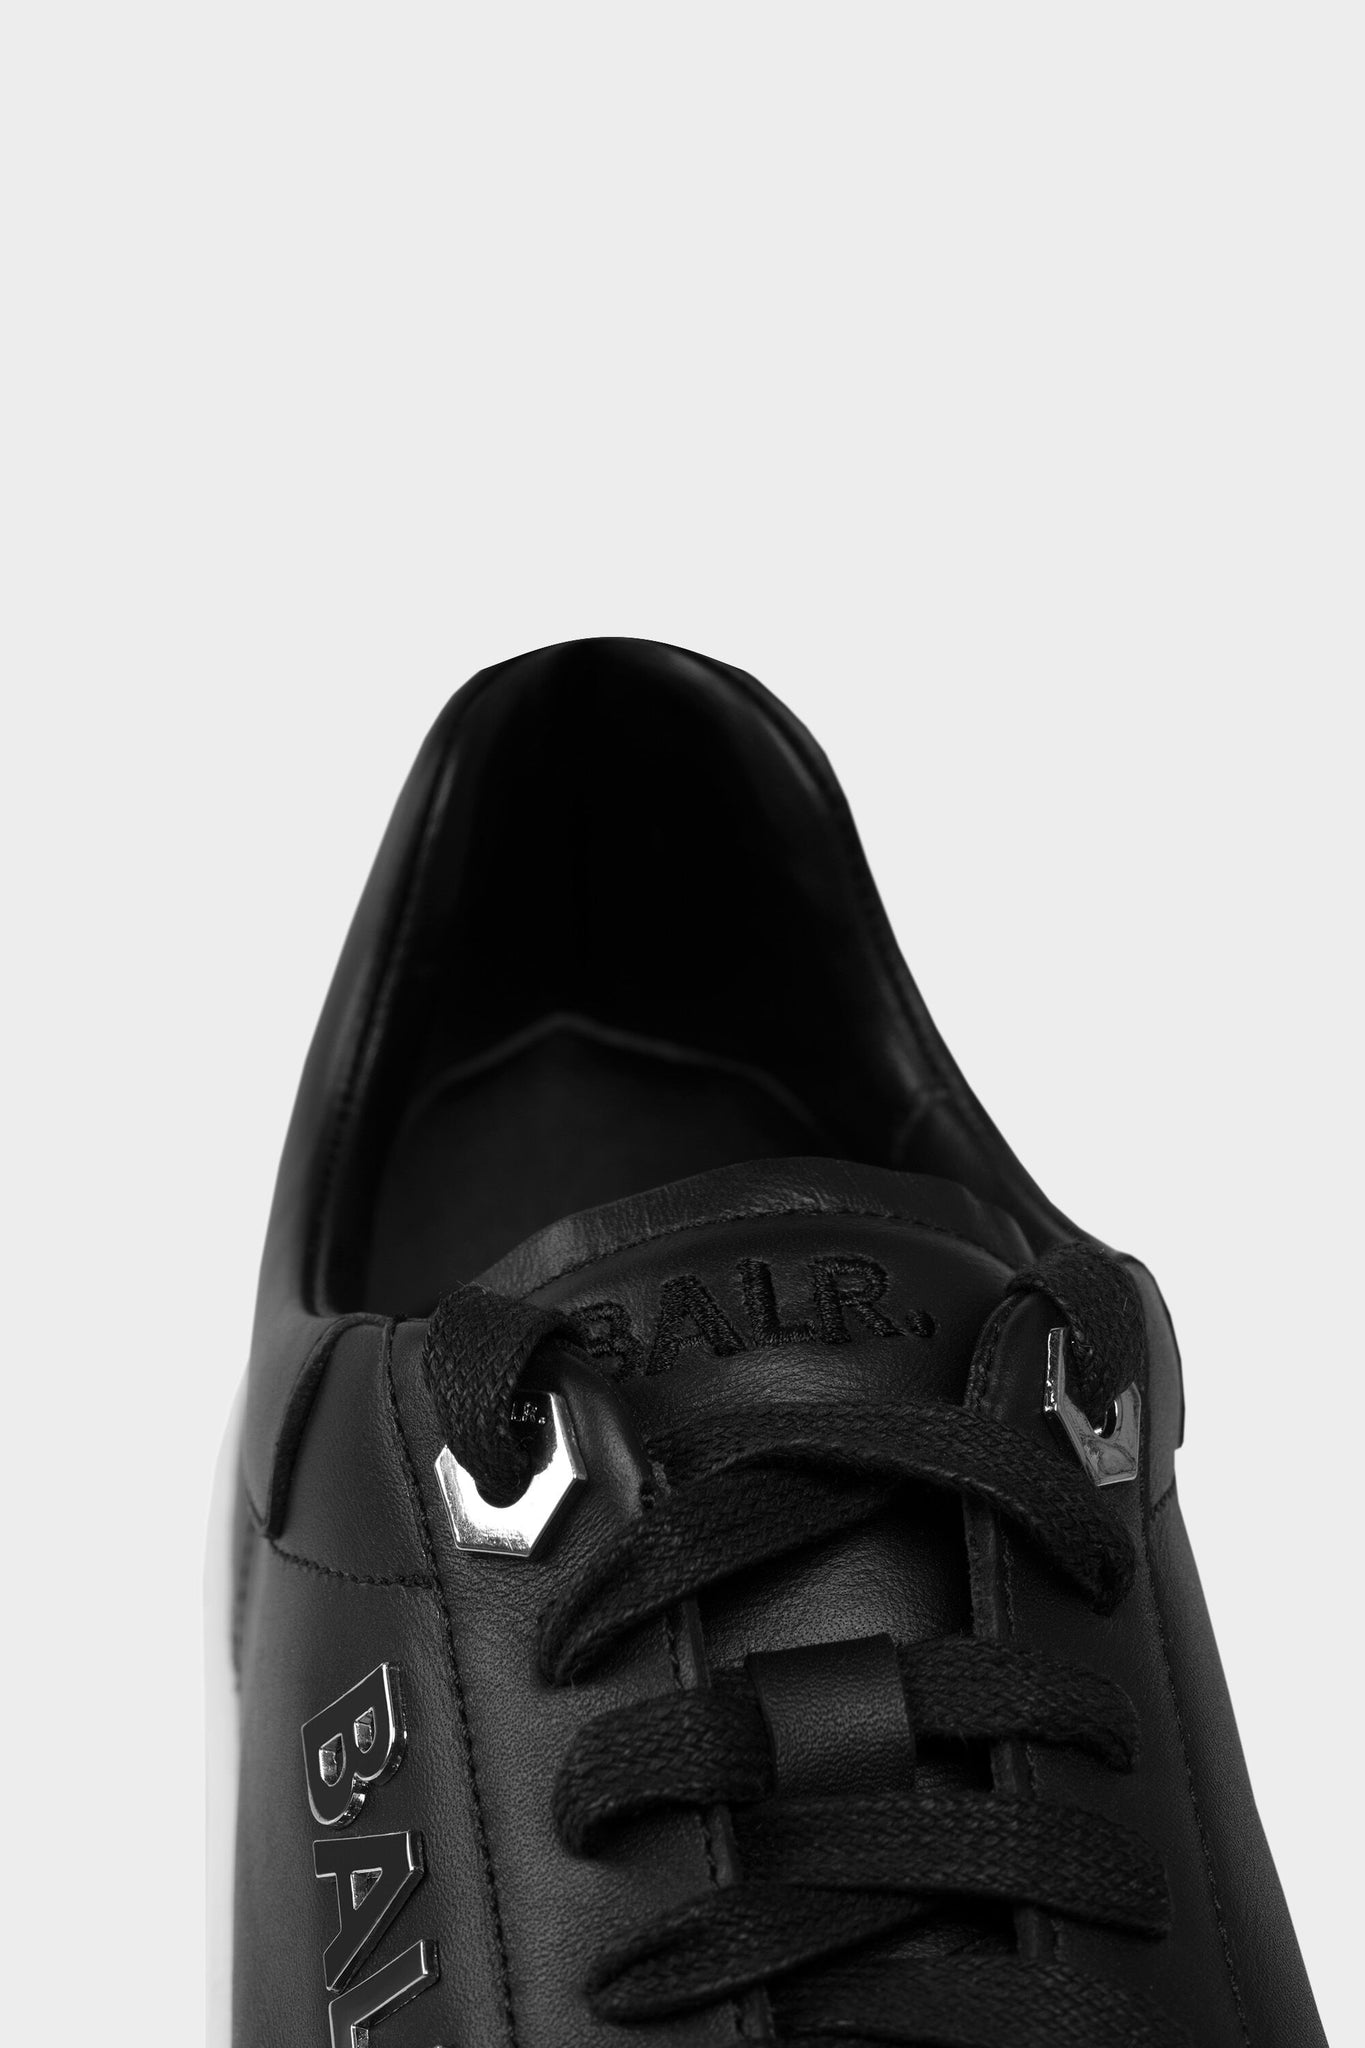 black sneakers for men